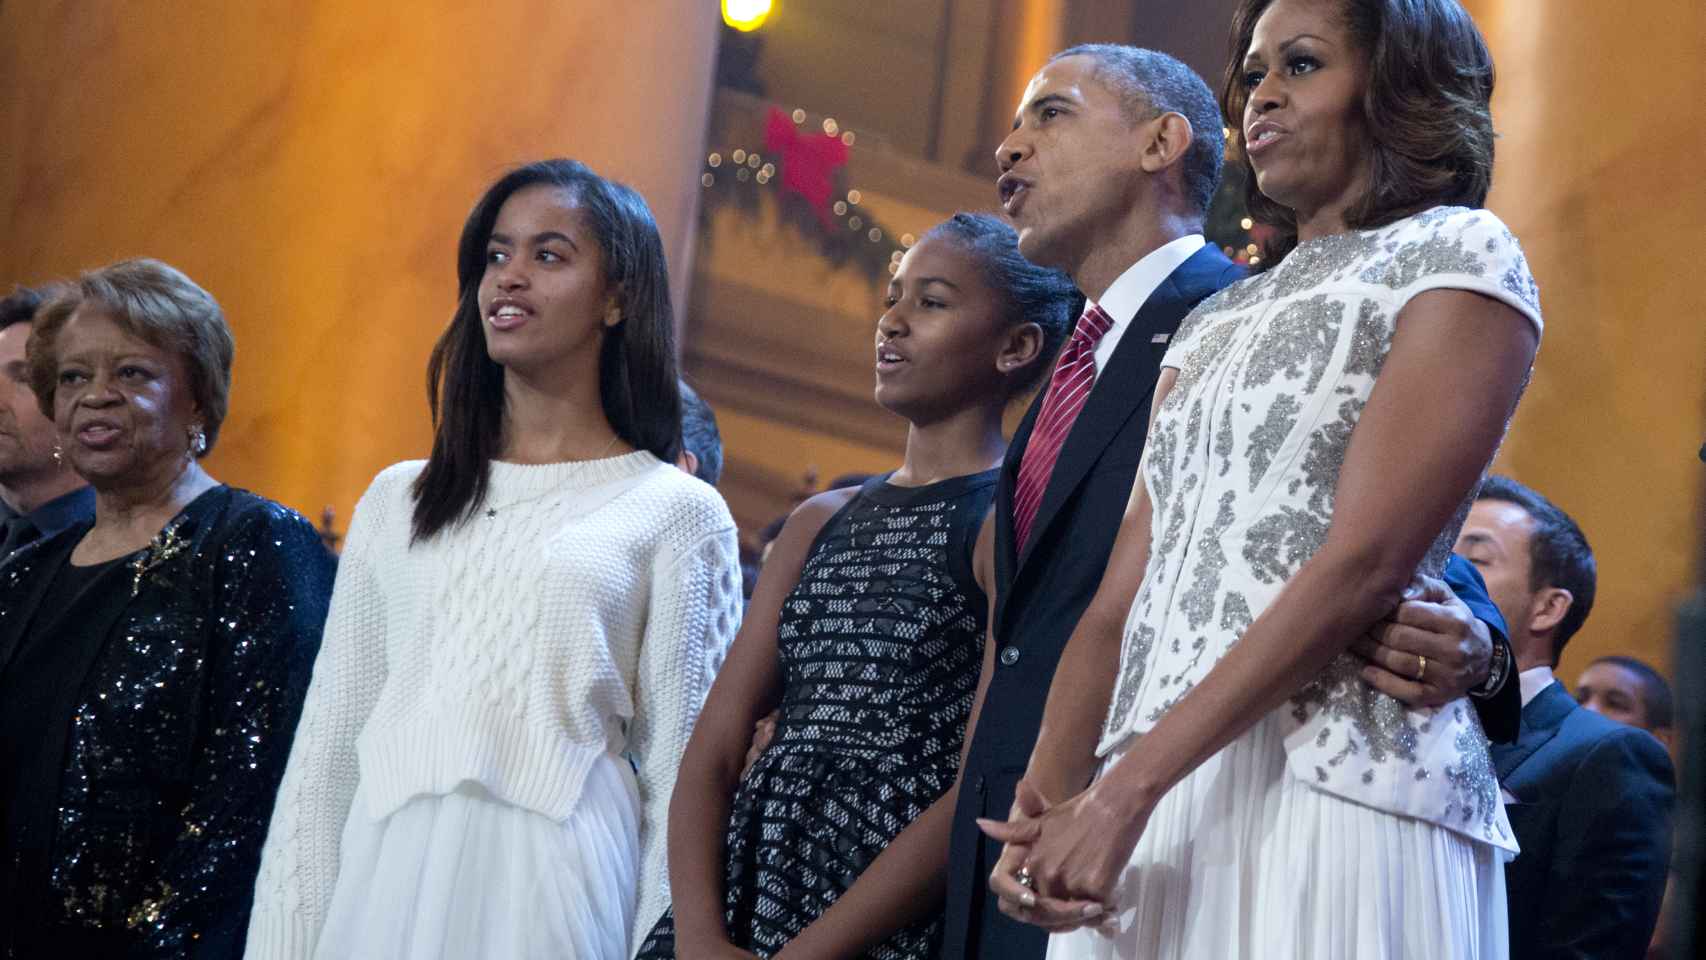 La familia Obama al completo.